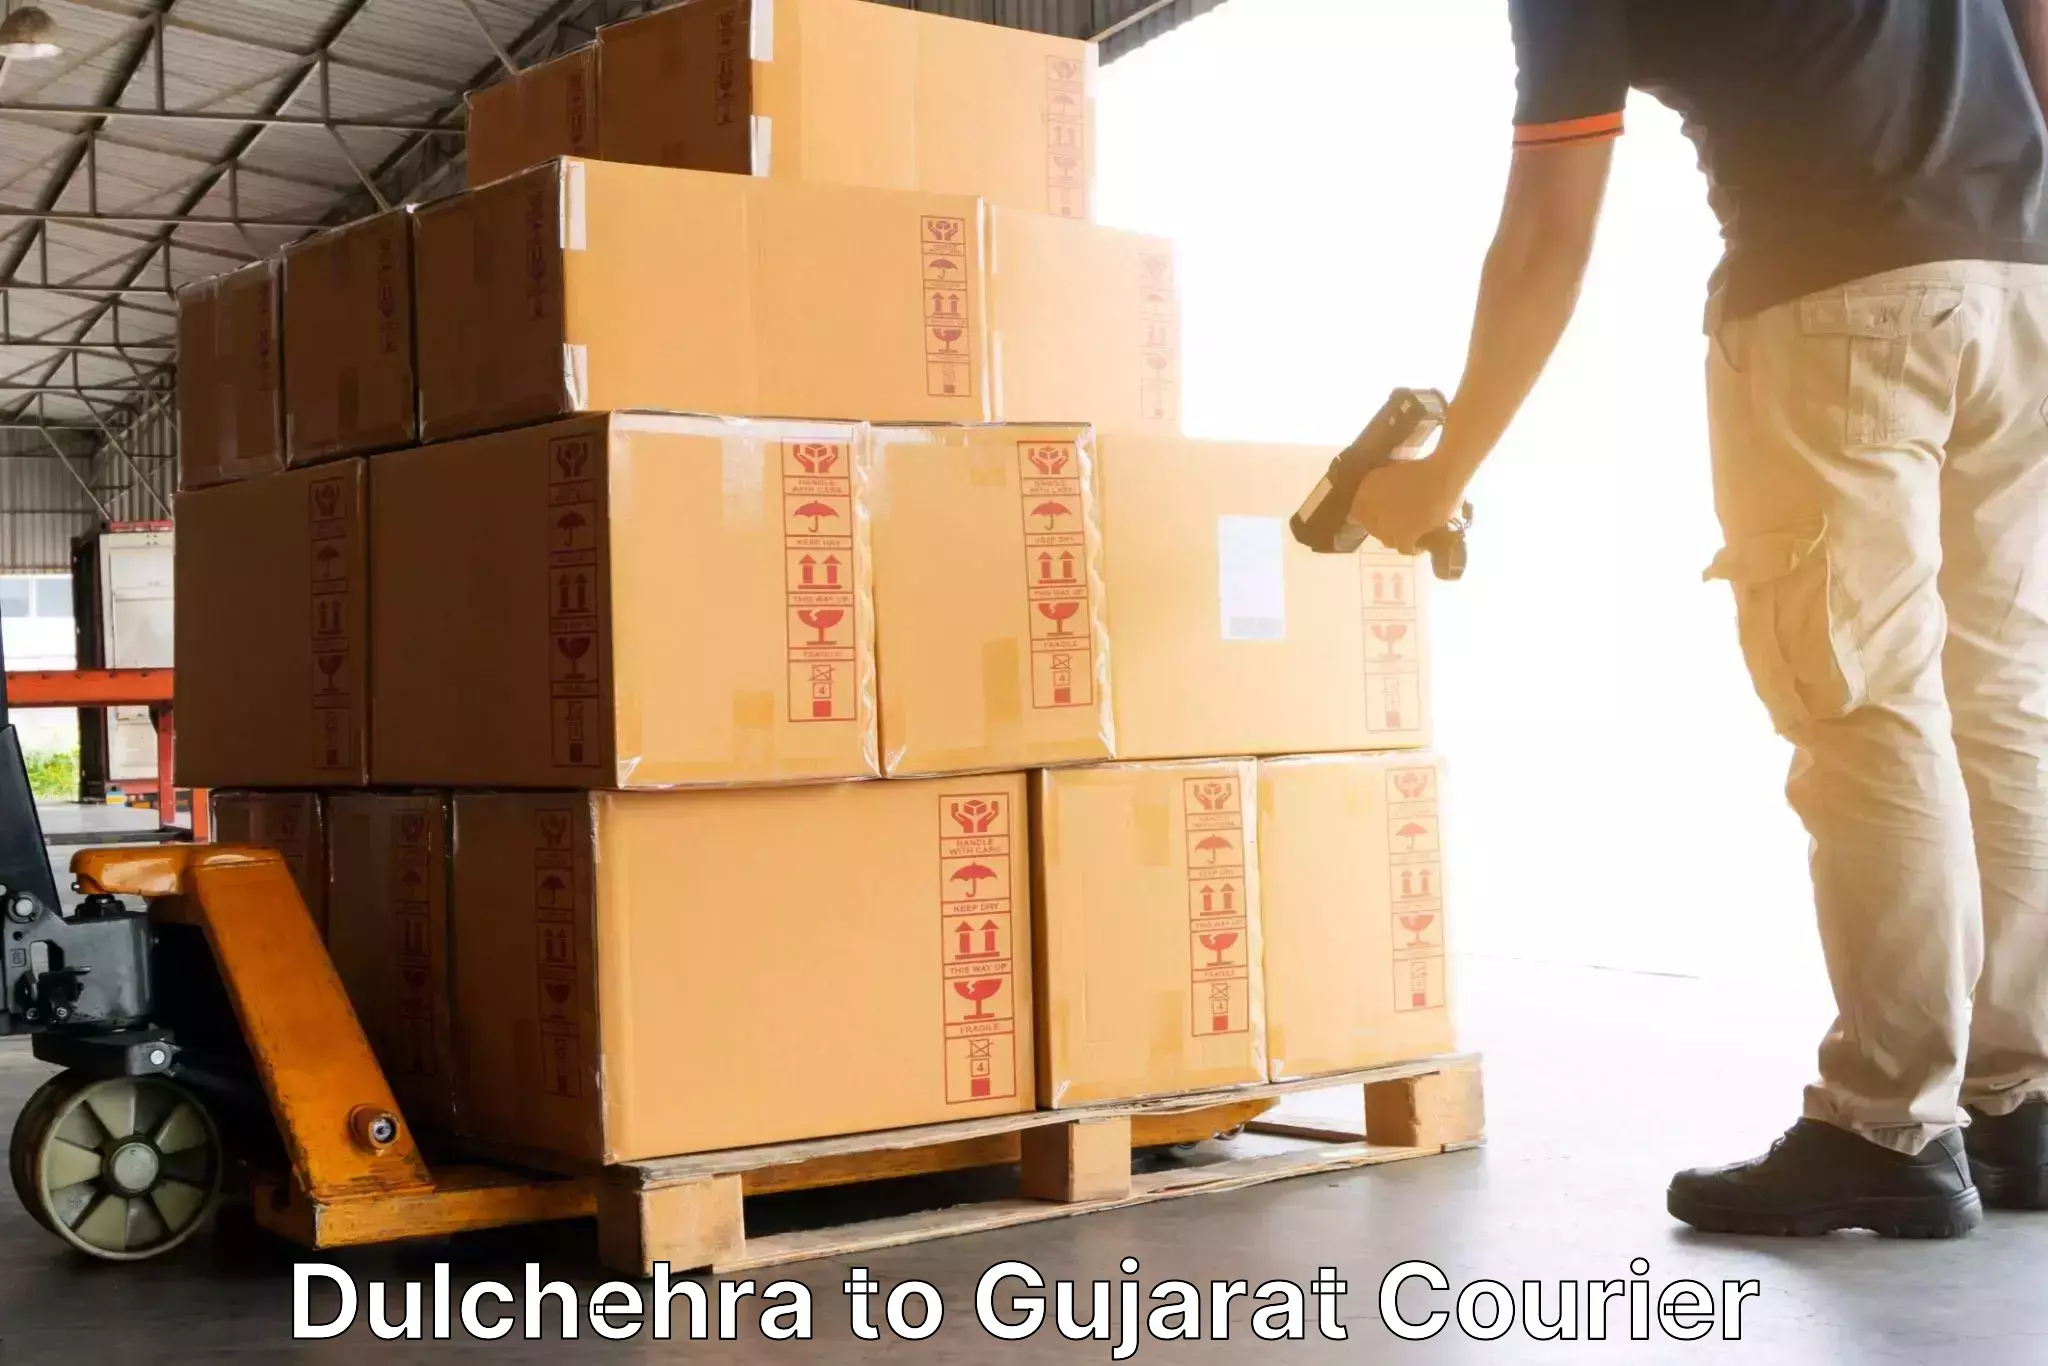 Flexible courier rates Dulchehra to Harij